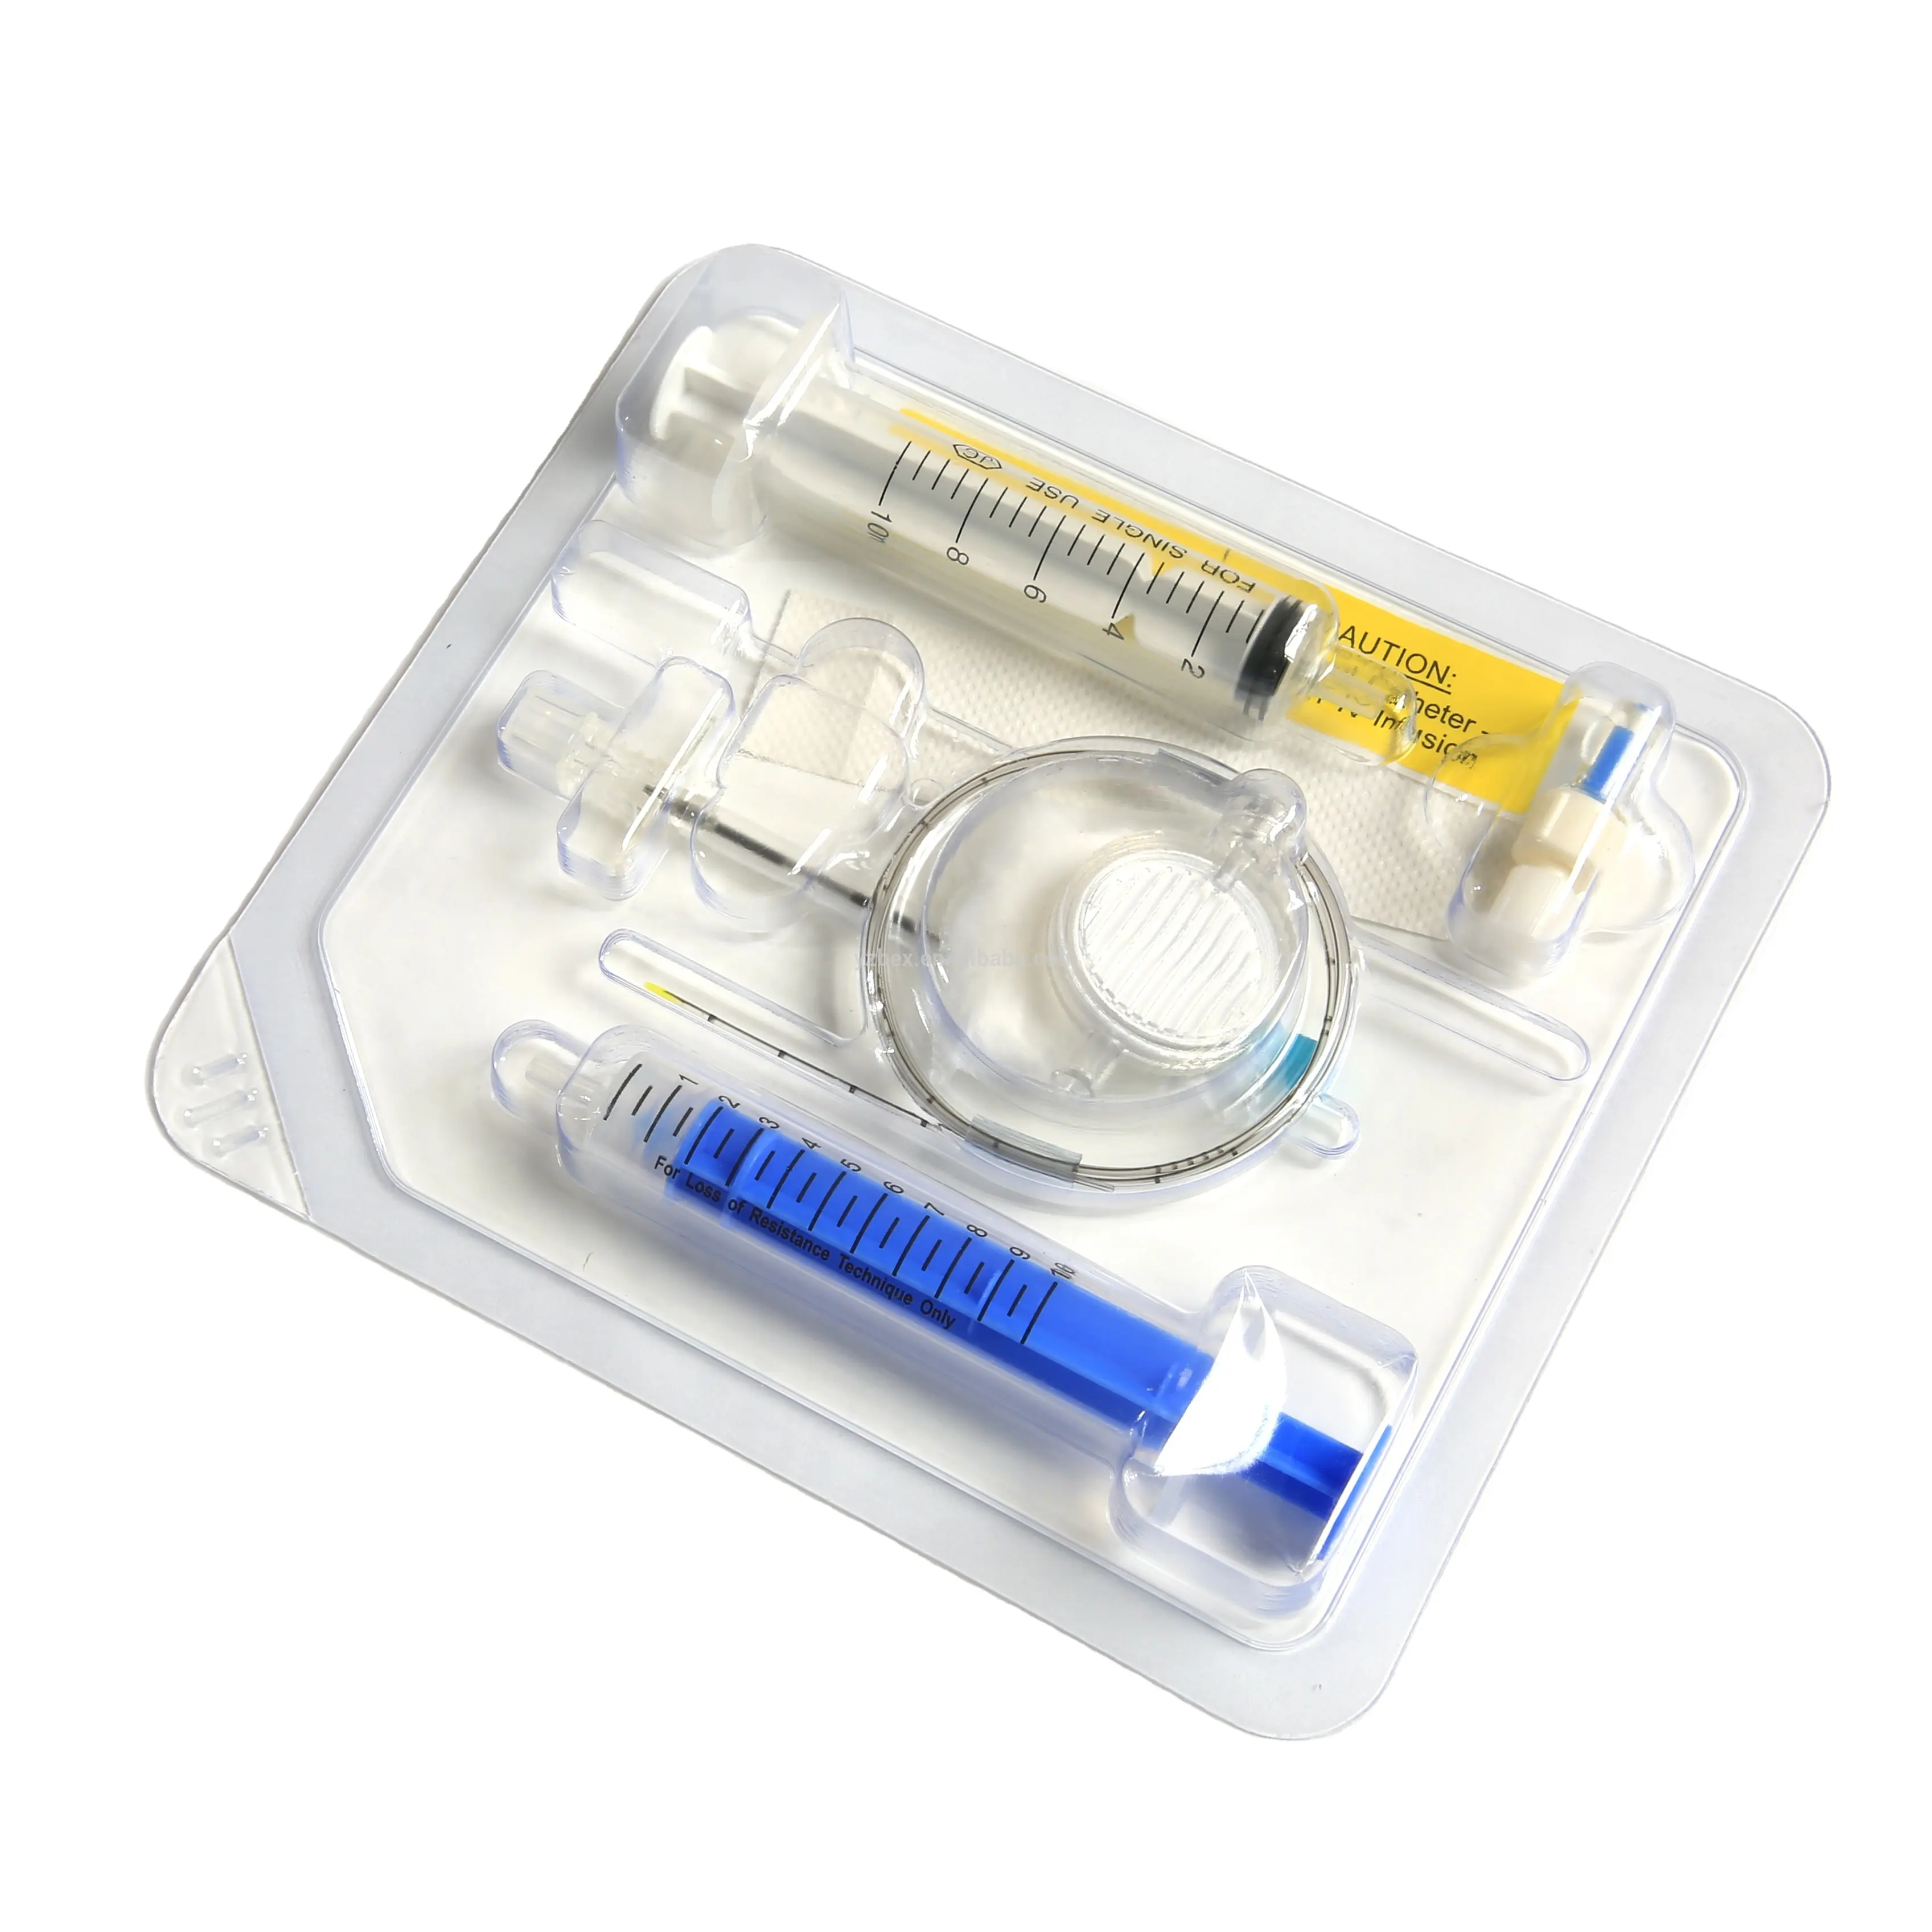 Medisch Gebruik Spinale Anesthesie Kit/Spinale Epidurale Set/Spinale Epidurale Kit